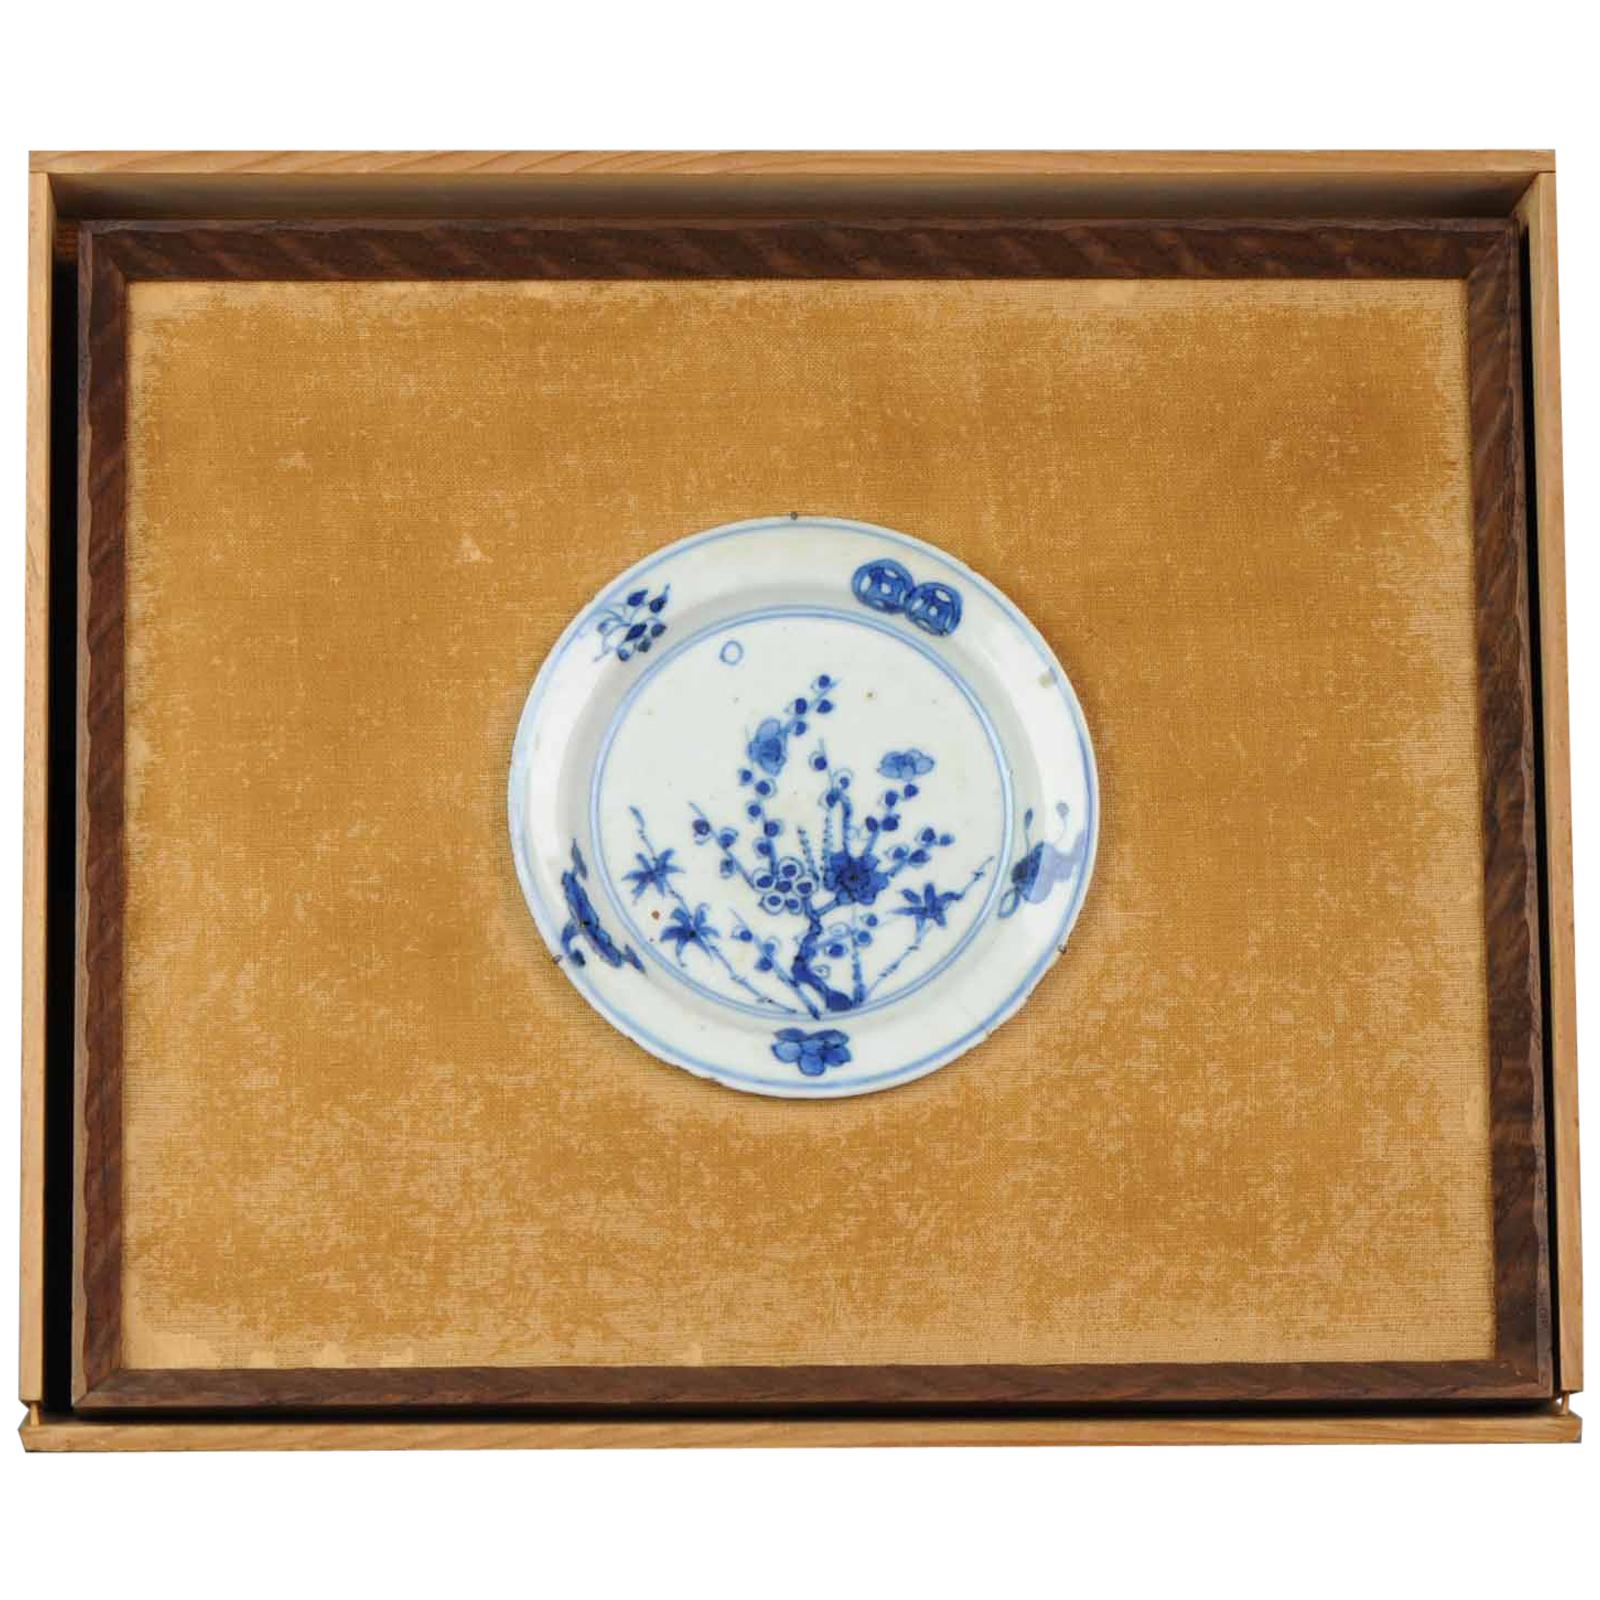 Insolite assiette et boîte encadrée en porcelaine chinoise ancienne du 17ème siècle avec fleurs de Ming